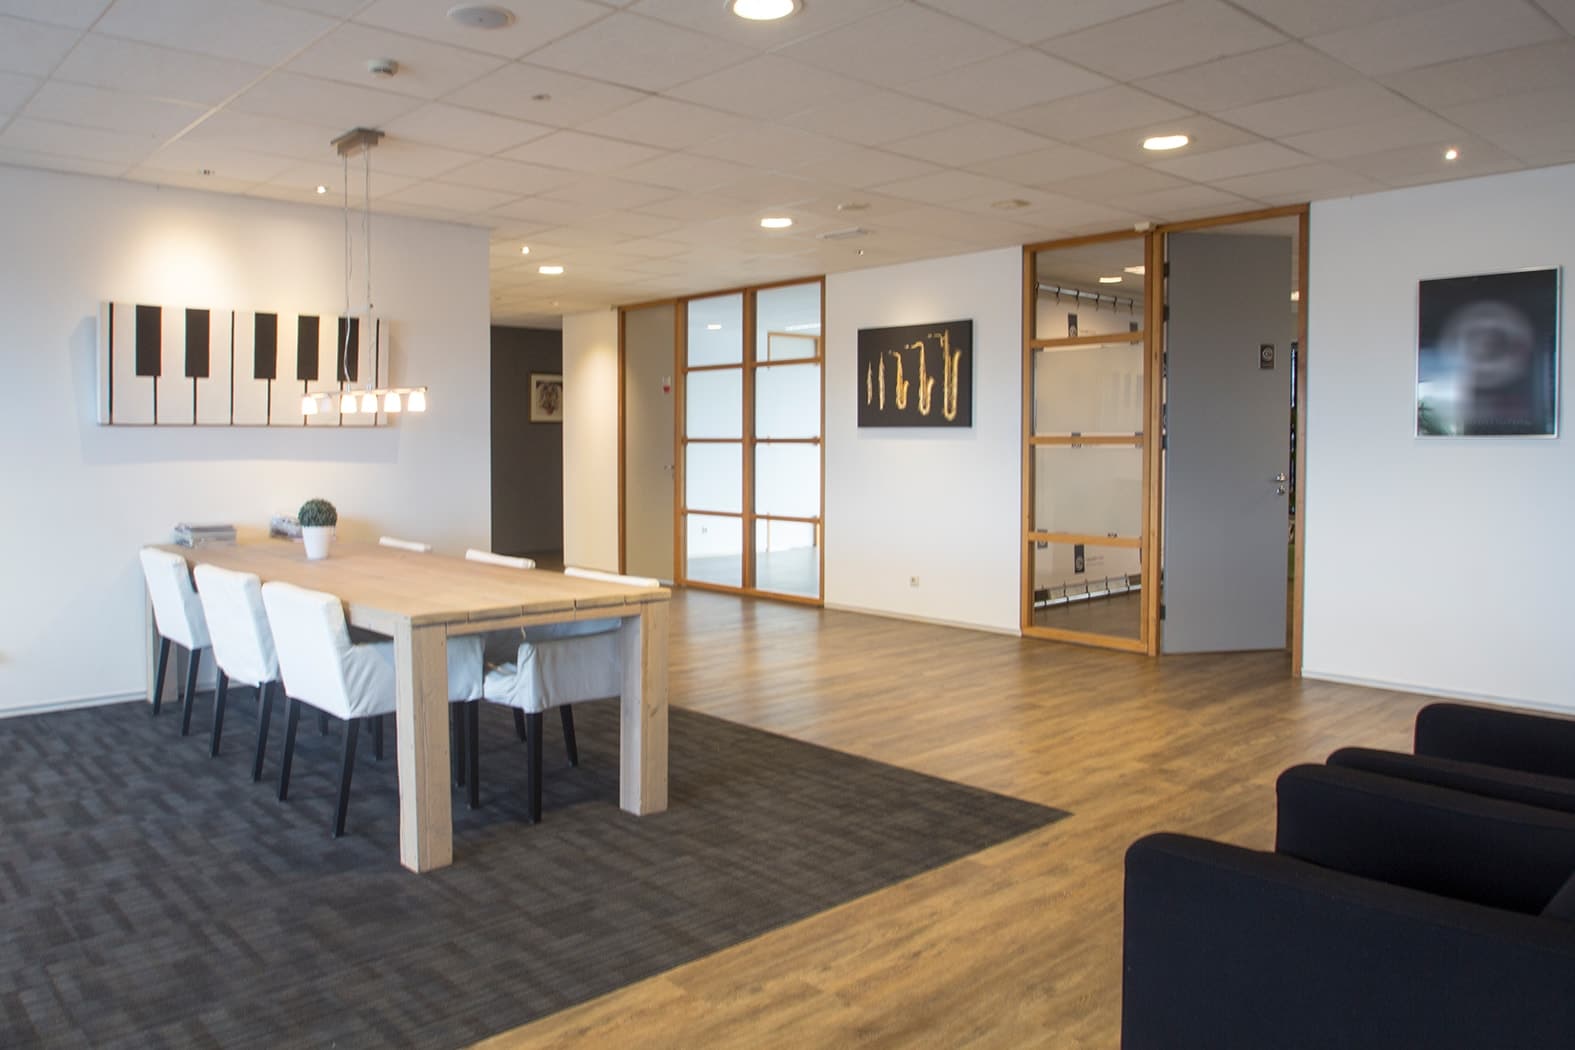 Kantoor huren in Aalsmeer | Studio's Aalsmeer | Crown Business Center Aalsmeer